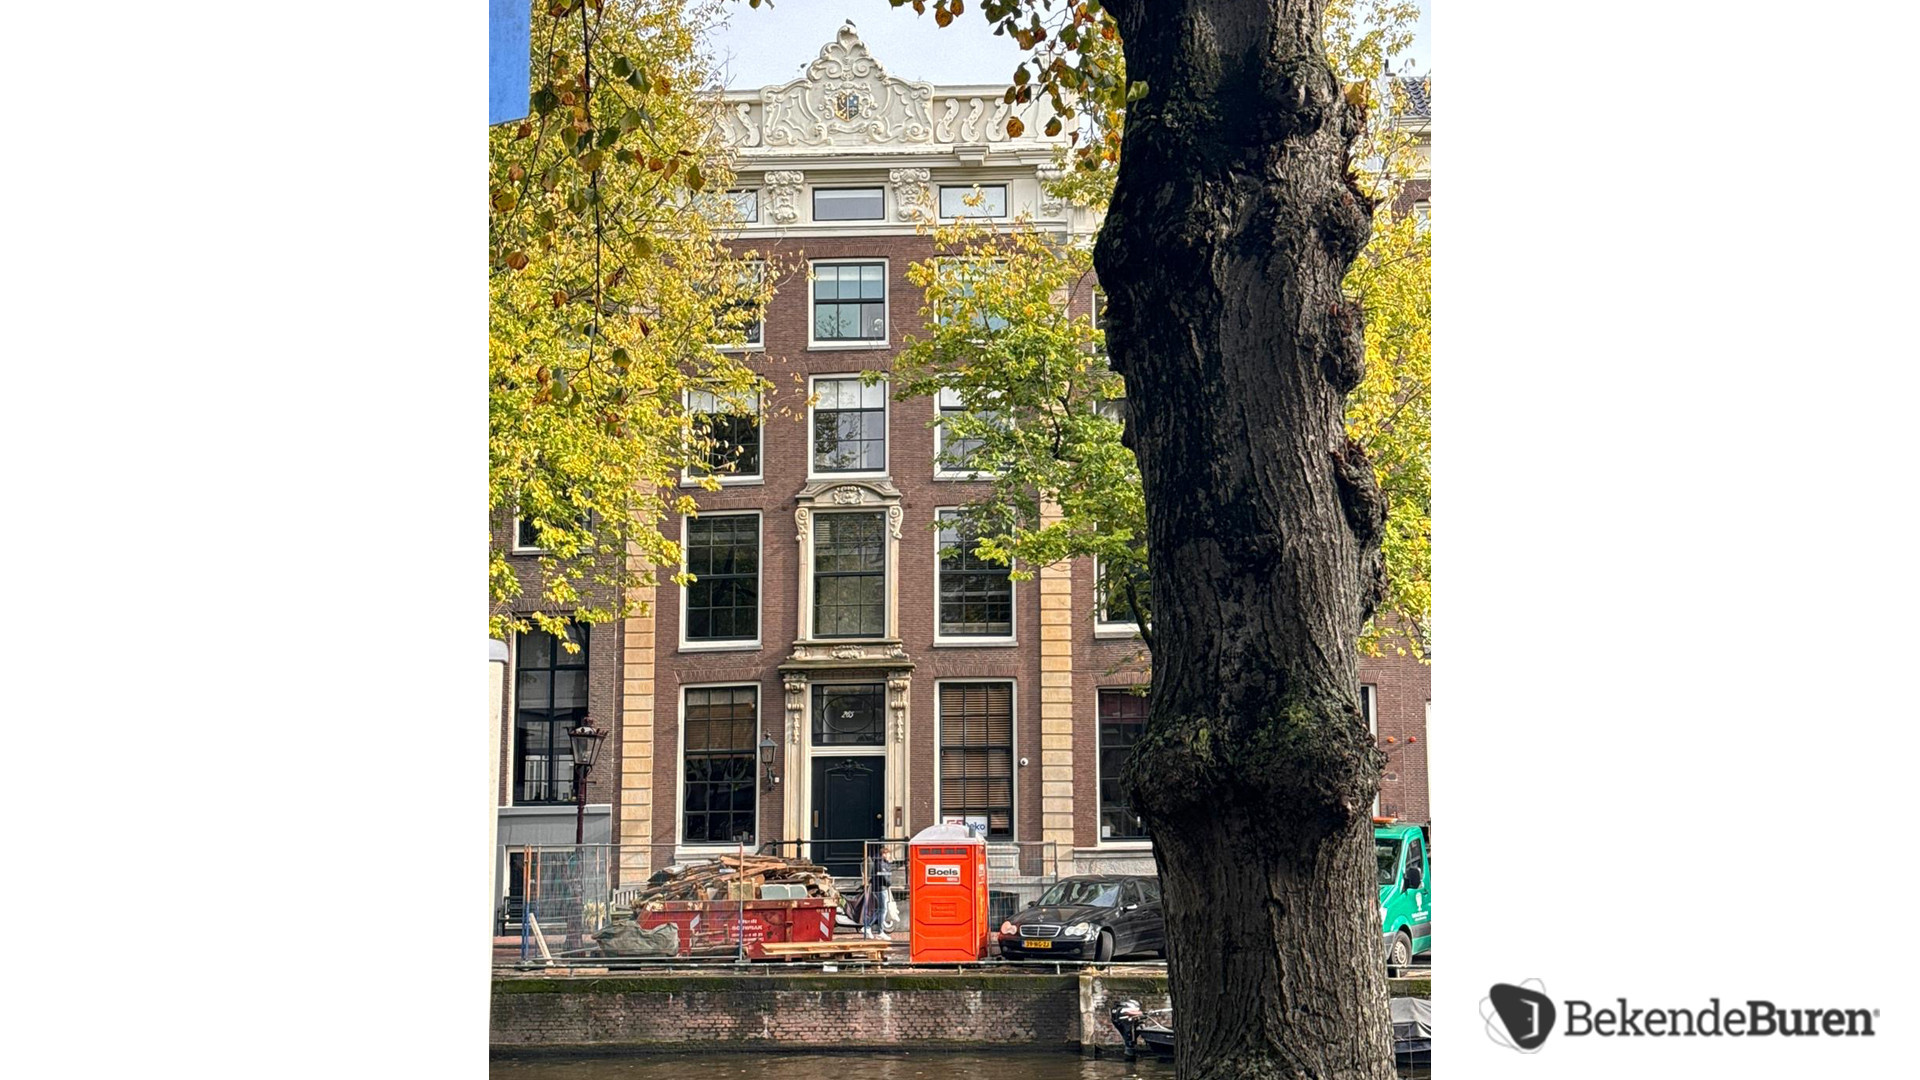 Lieke van Lexmond en Bas van Veggel kopen miljoenenpand aan de Keizersgracht in Amsterdam. Zie foto's 2